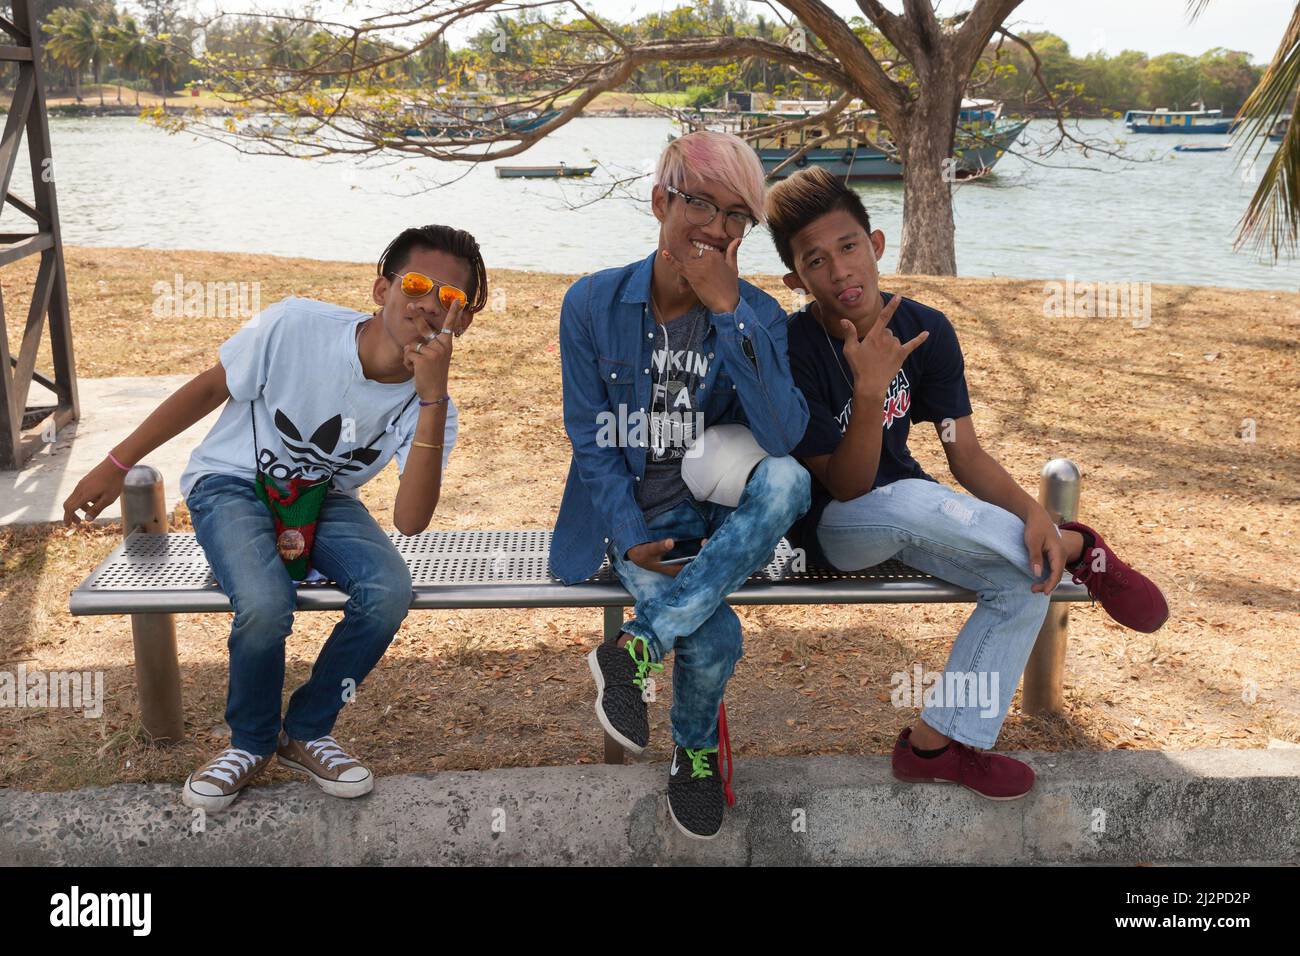 Kota Kinabalu, Malaysia - 17. März 2019: Porträt von drei positiven malaysischen Jungen, die auf einer Bank im öffentlichen Park von Kota Kinabalu sitzen Stockfoto